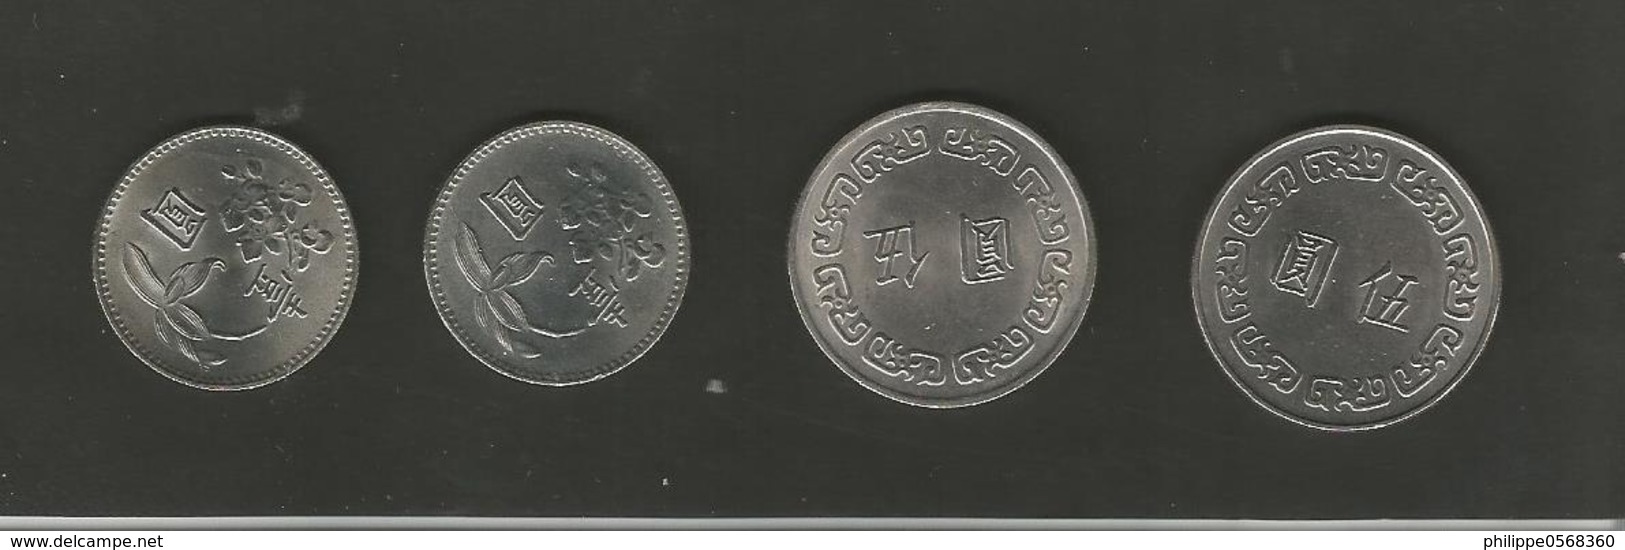 Monnaies Taïwanaises - Taiwan